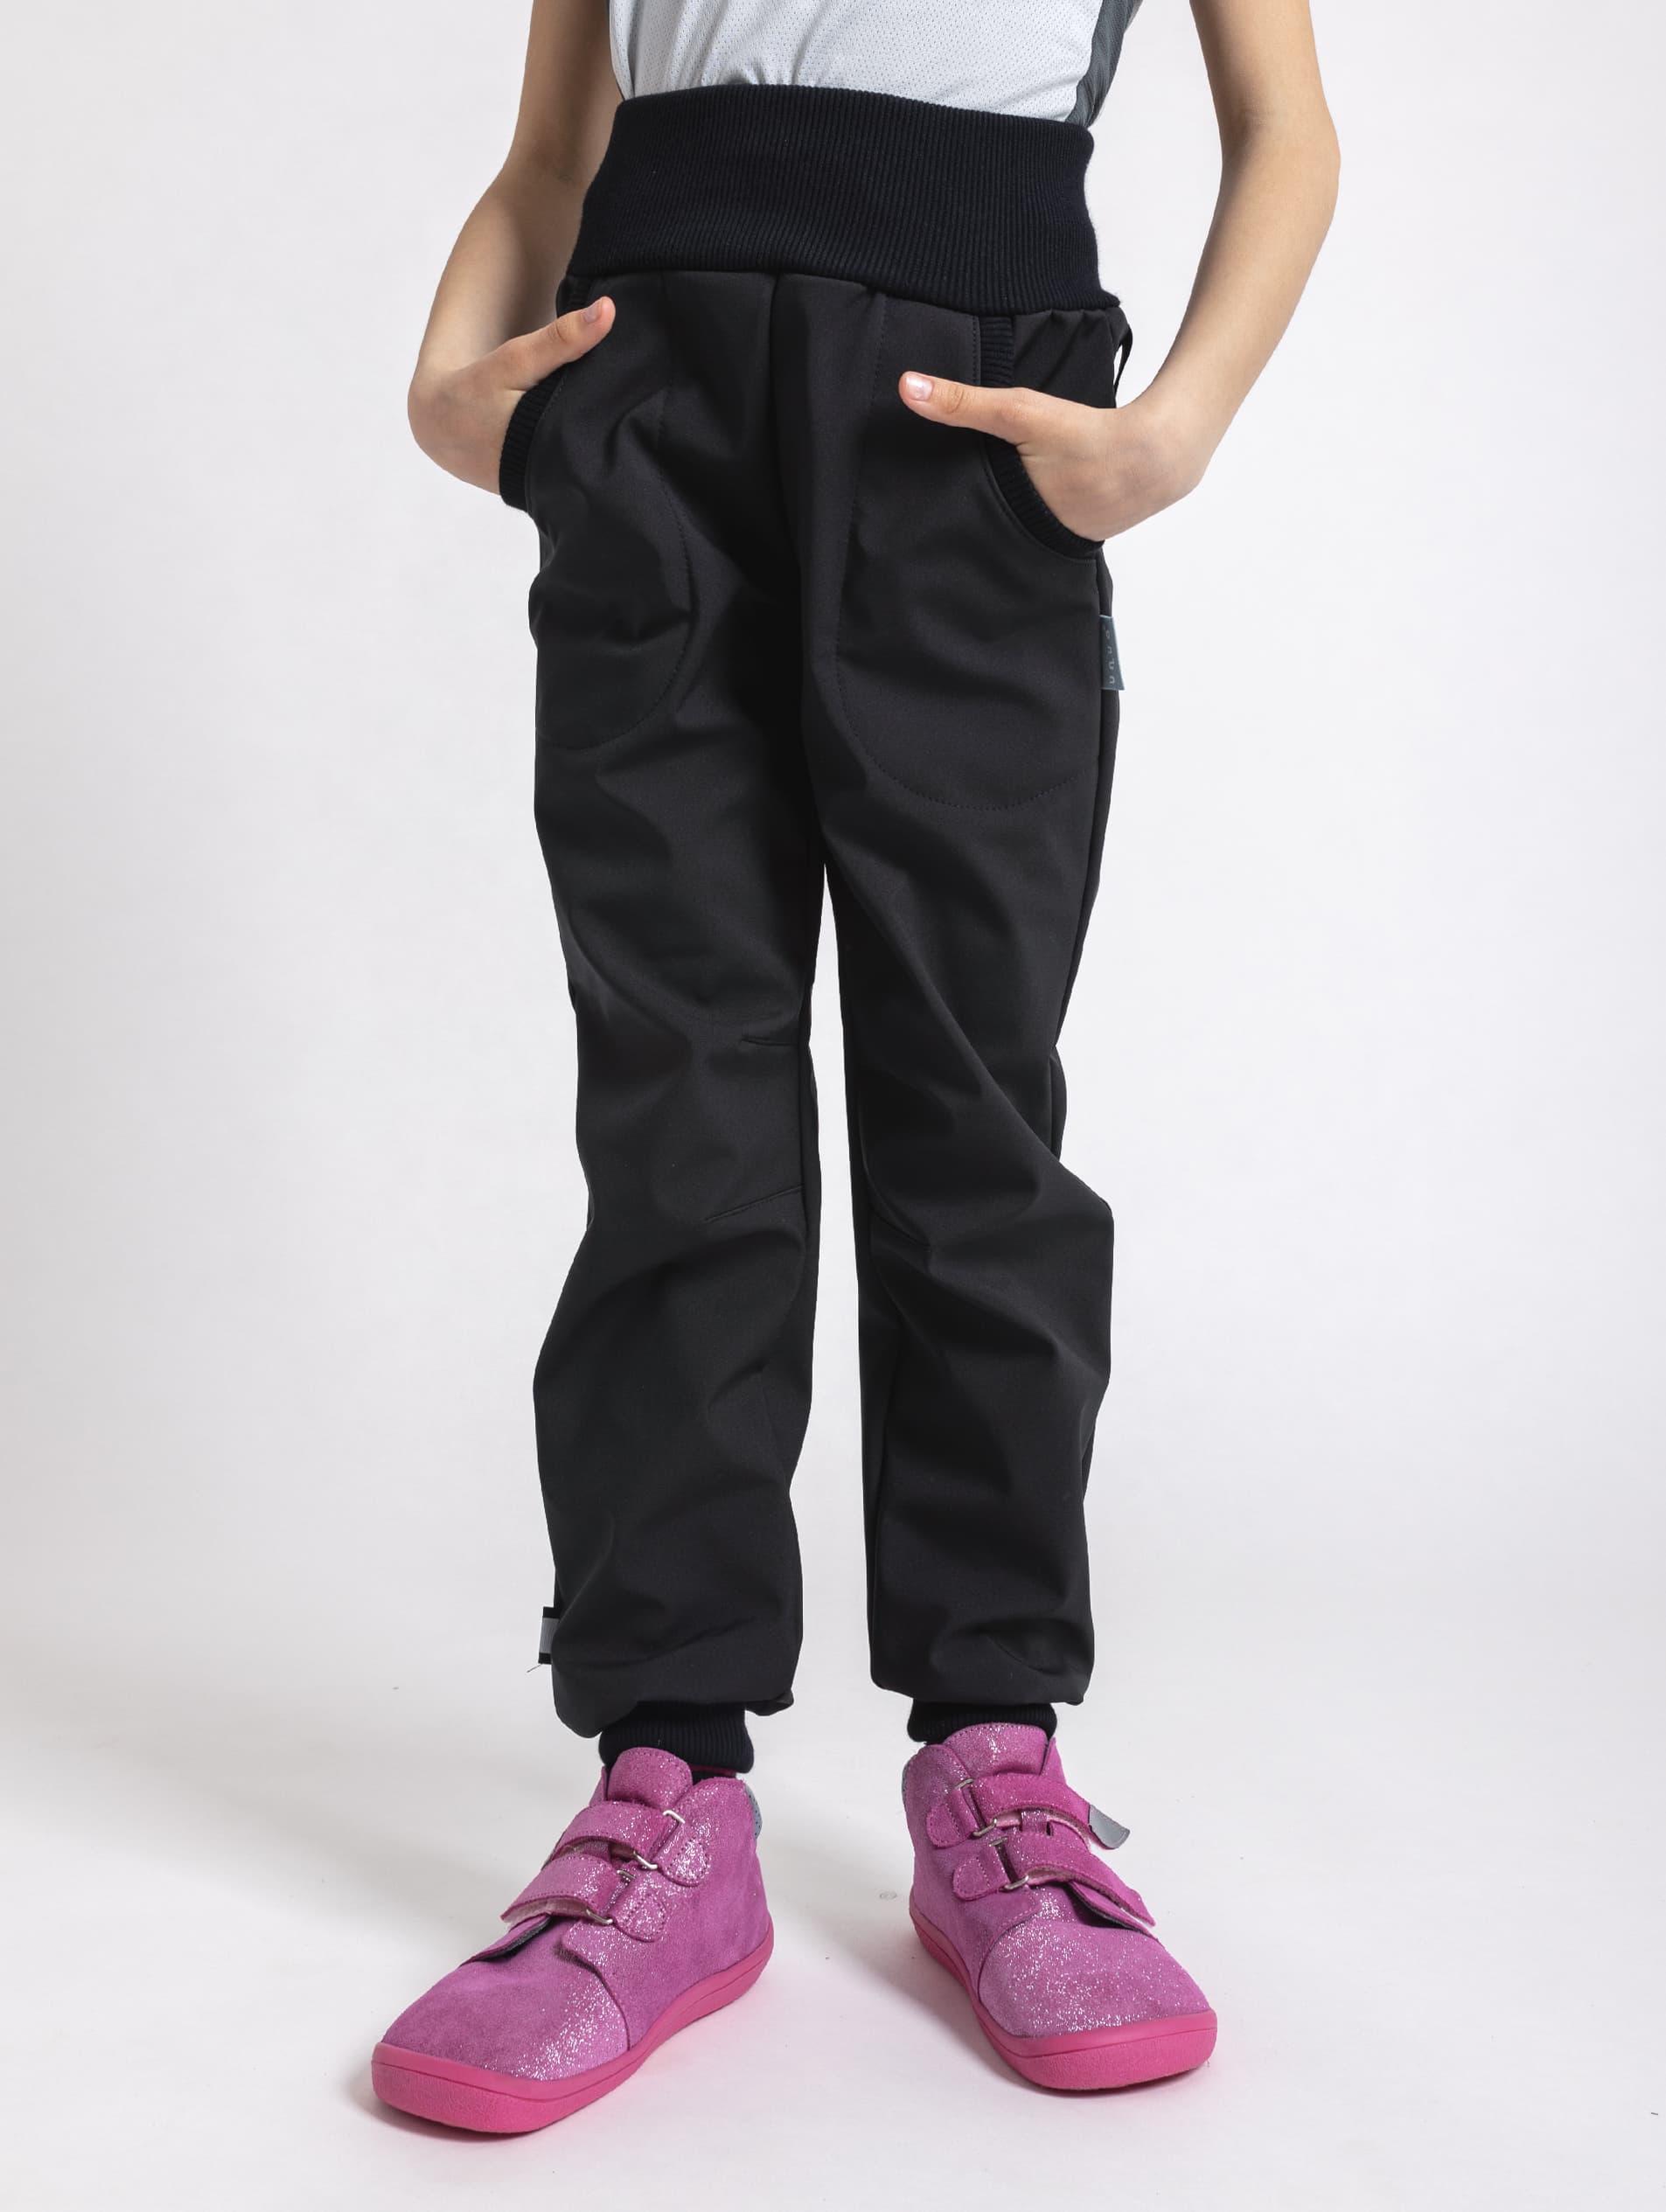 UNUO Softshellové kalhoty s fleecem STREET, černé Velikost: 122 - 128